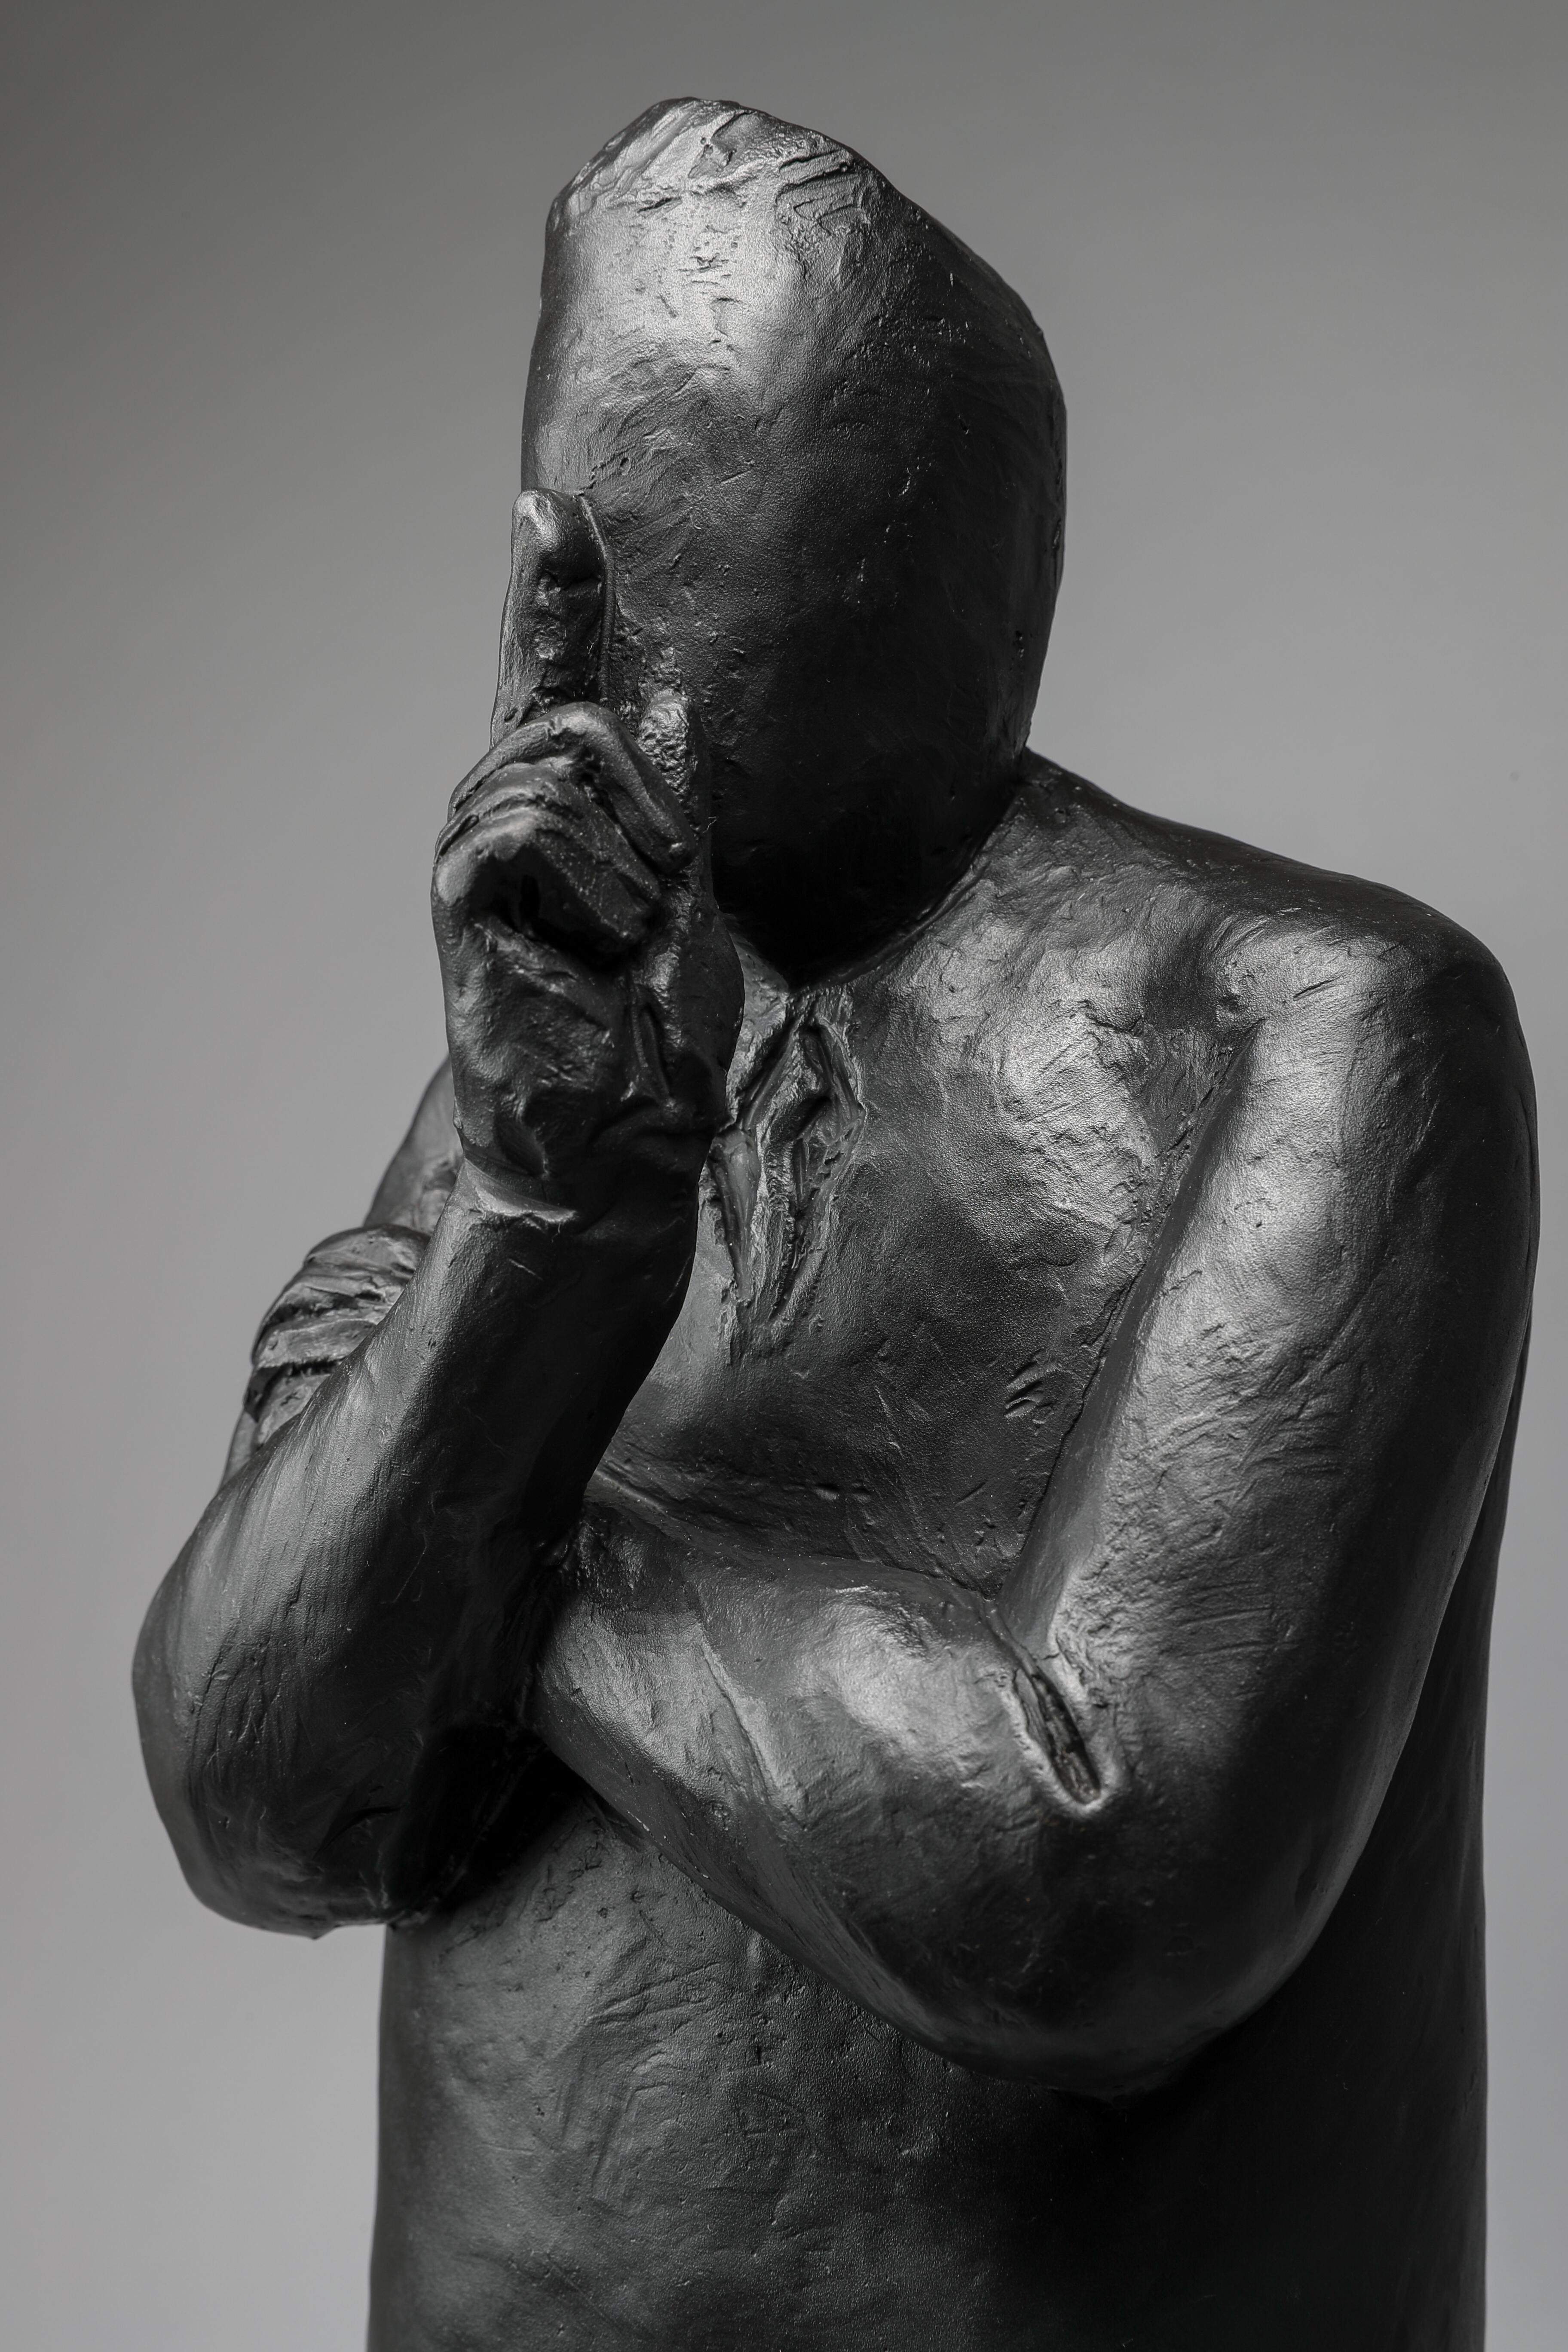 Listen - Sculpture by Jim Rennert